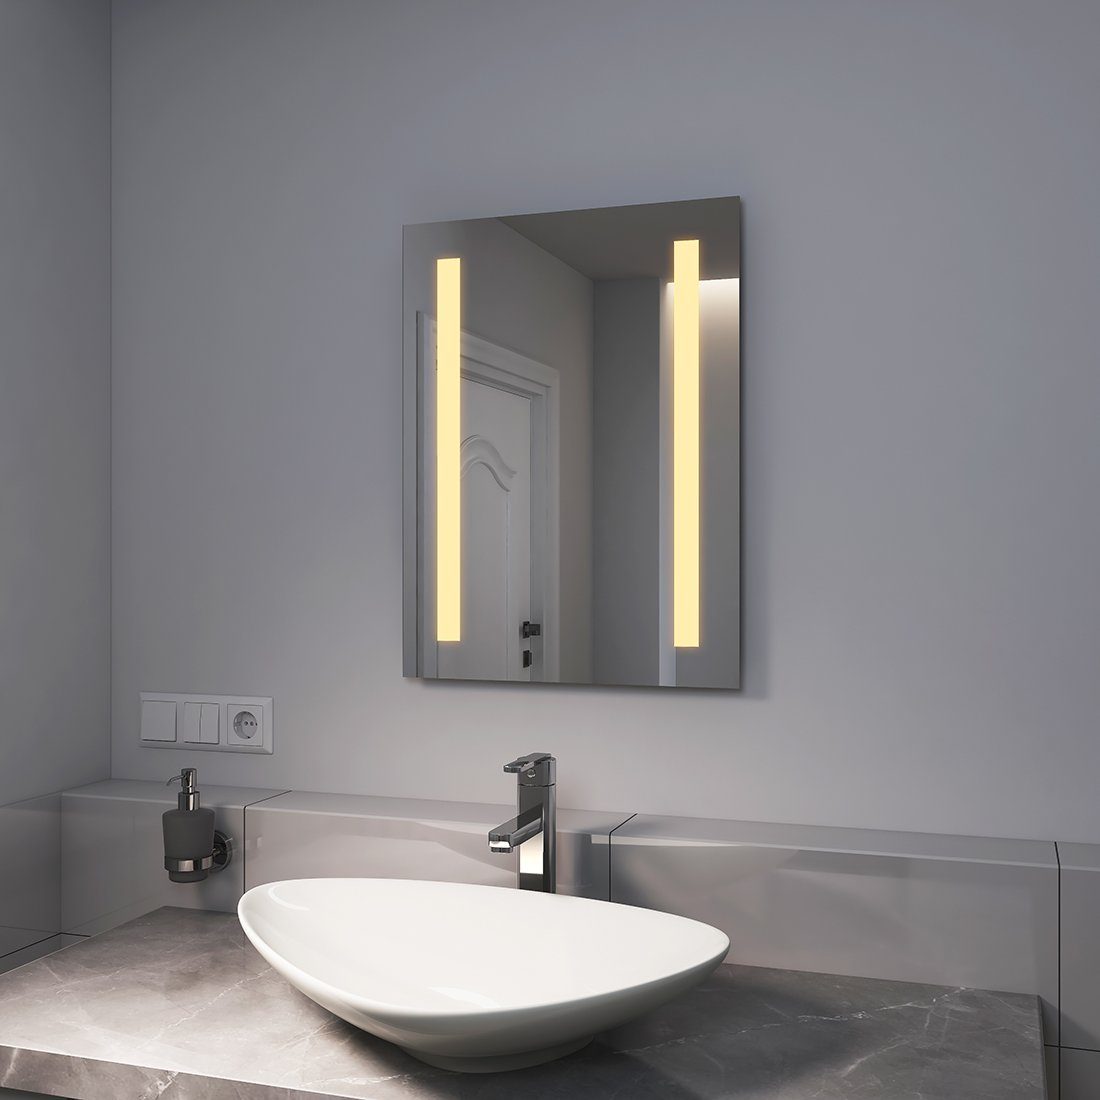 EMKE Badspiegel LED Badspiegel Badezimmerspiegel Wandspiegel, mit Warmweißer oder kaltweiß Beleuchtung